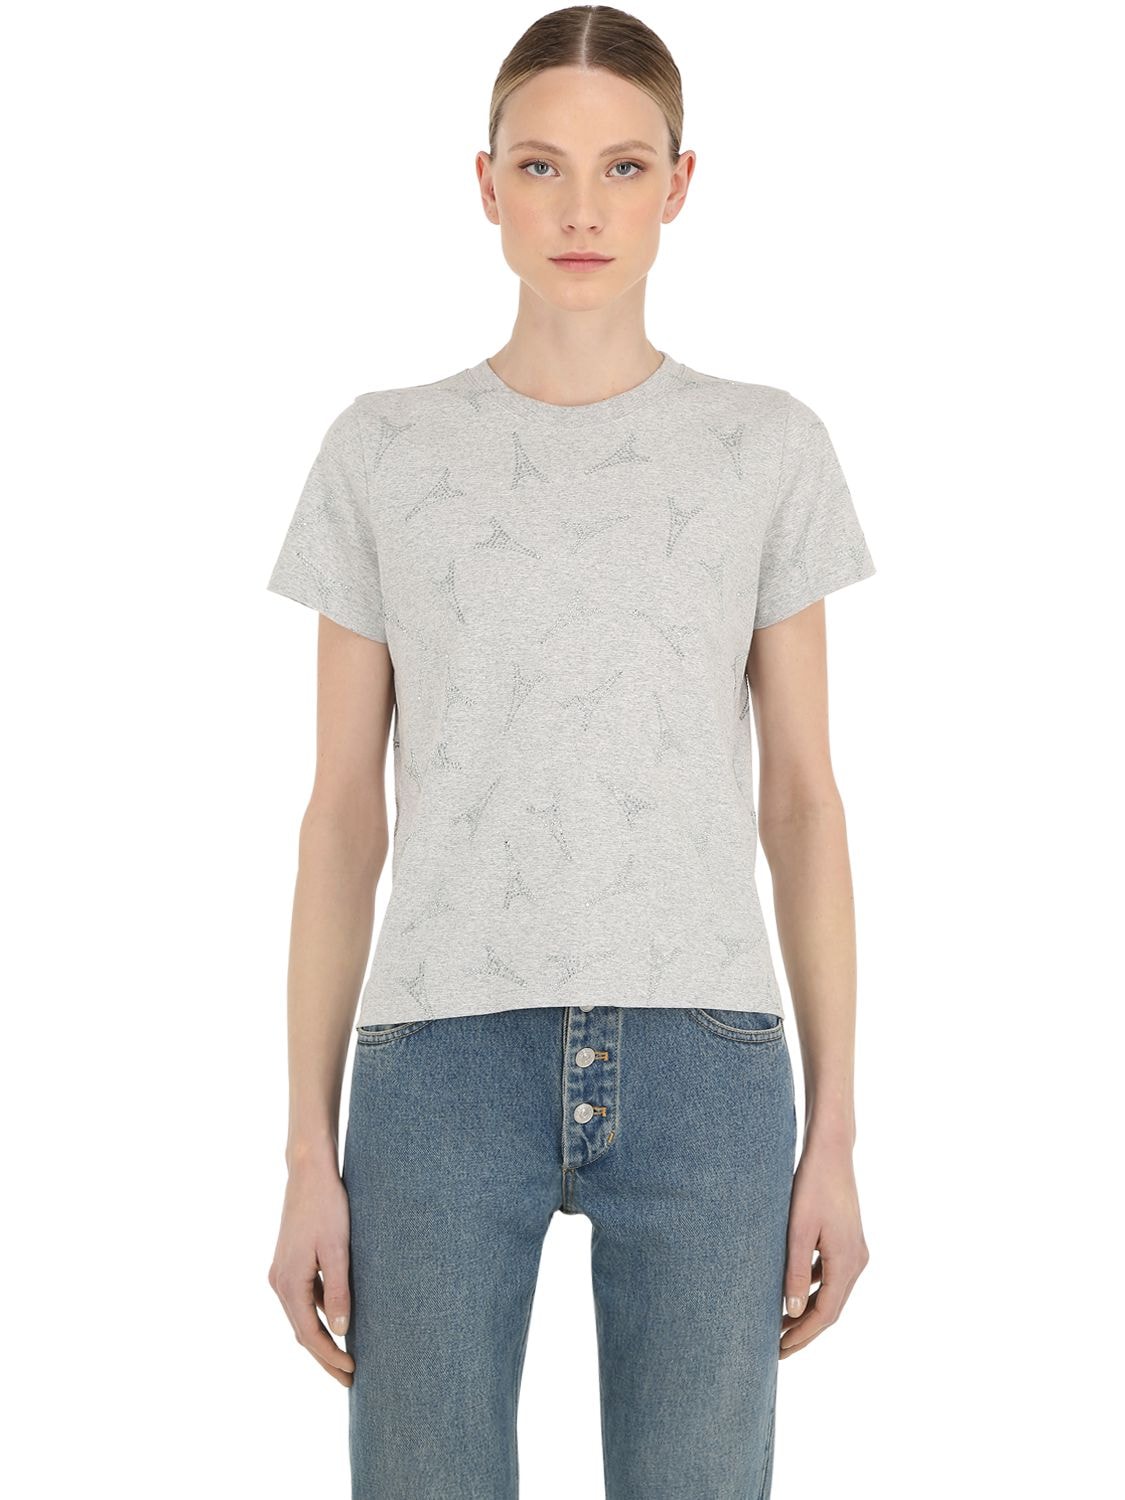 Balenciaga Eiffel Tower Embellished Cotton T-shirt In Heather Grey